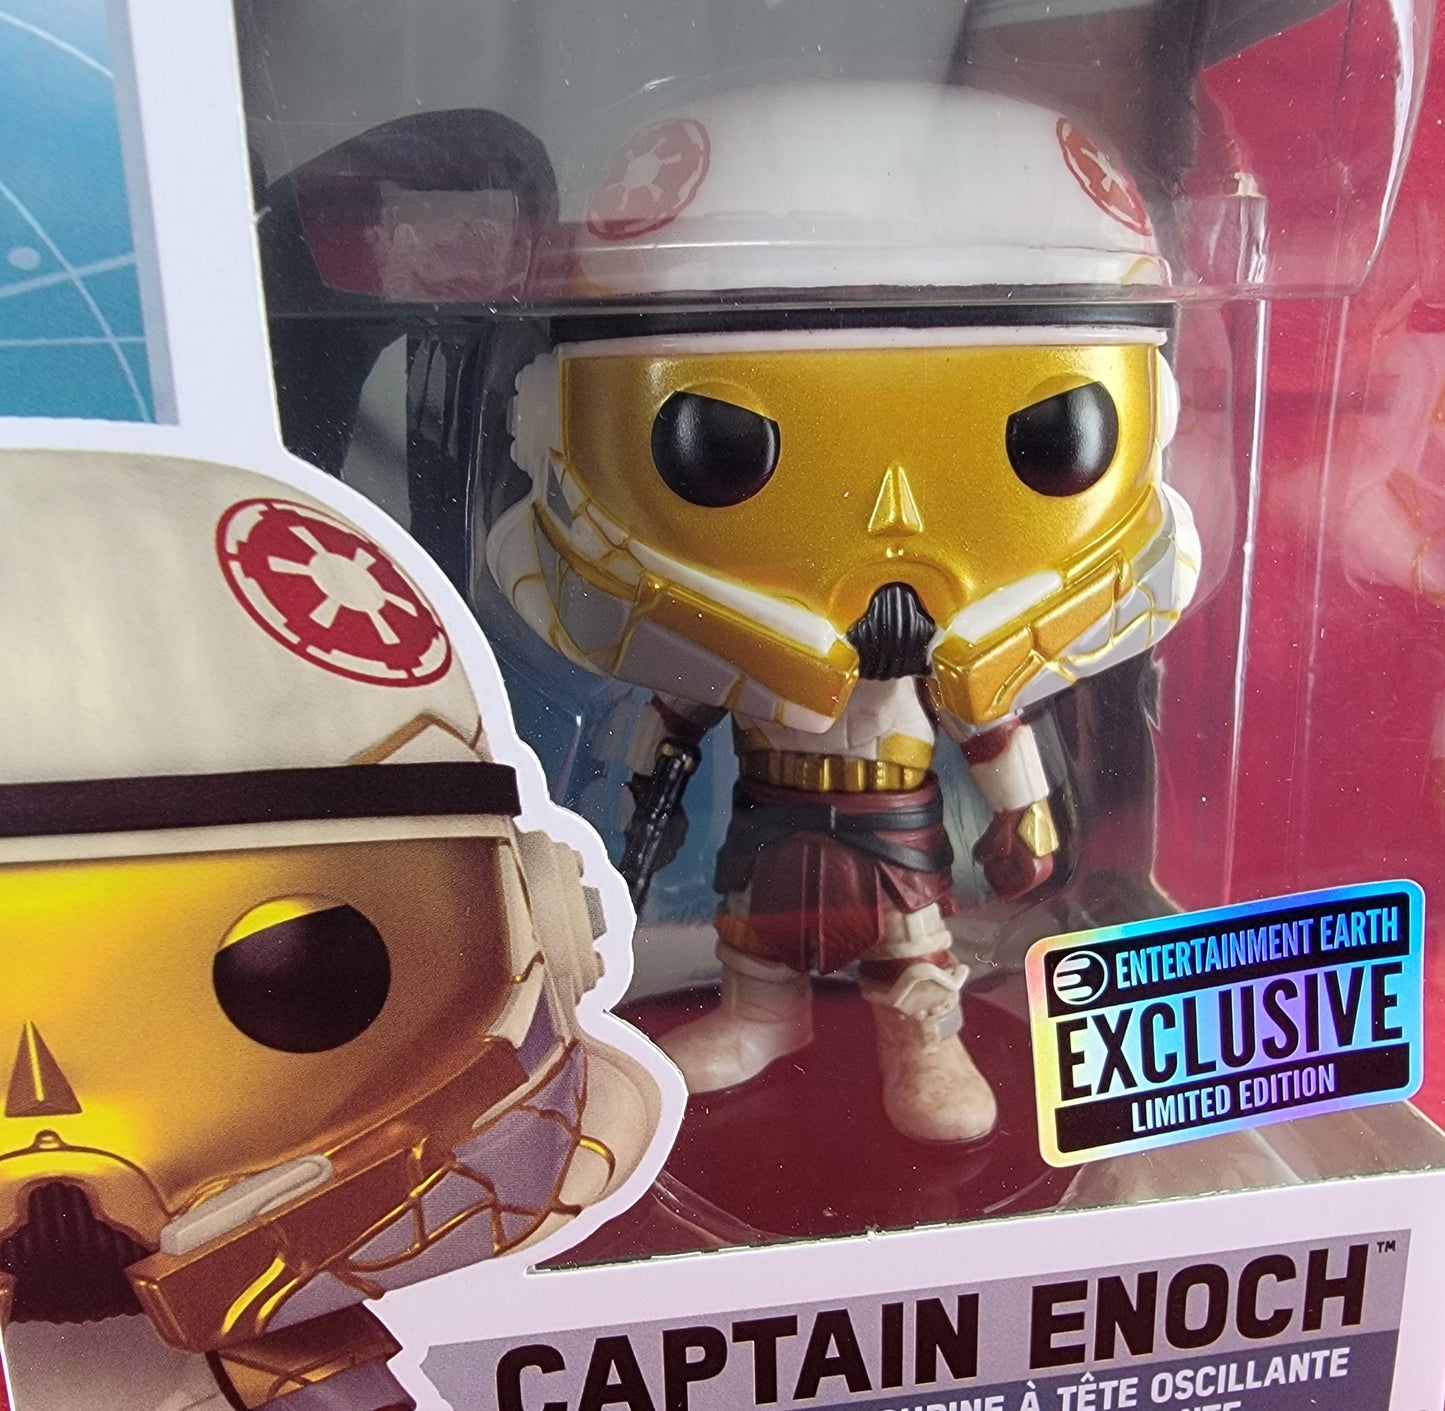 Captain Enoch entertainment earth exclusive # 690 (nib)